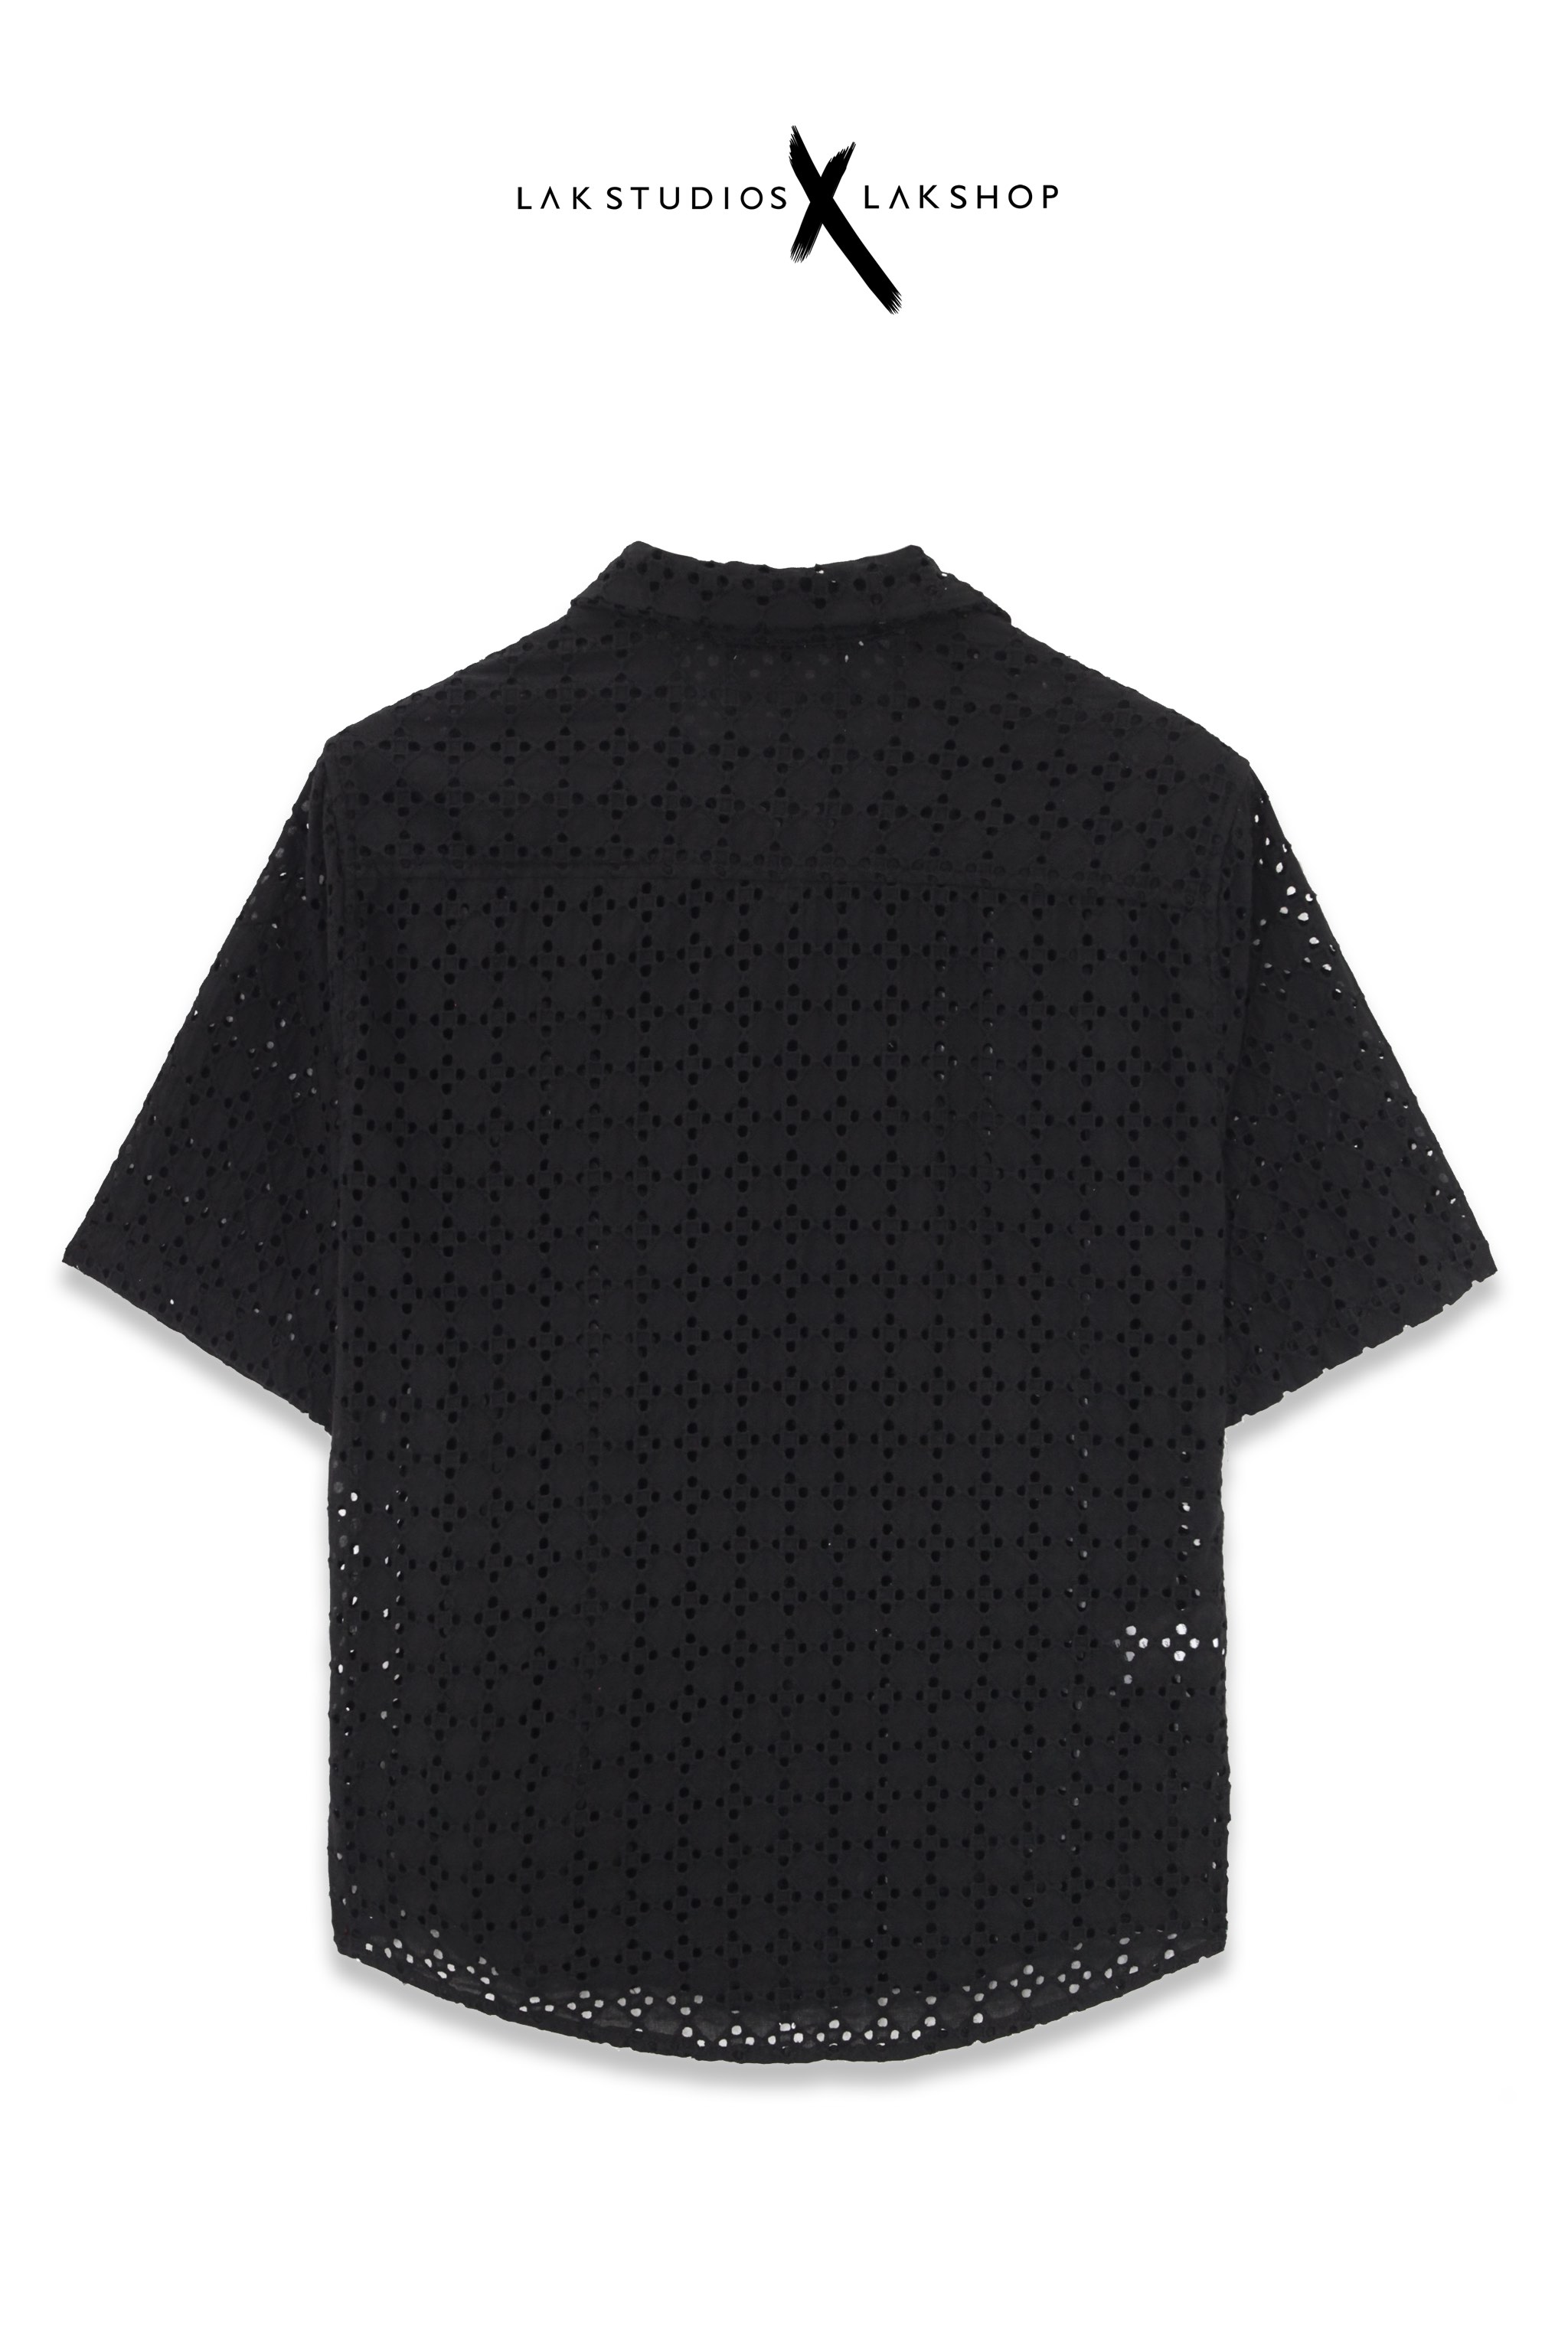 Lak Studios Black Flower Mesh Shirt (Áo lưới)  cx2